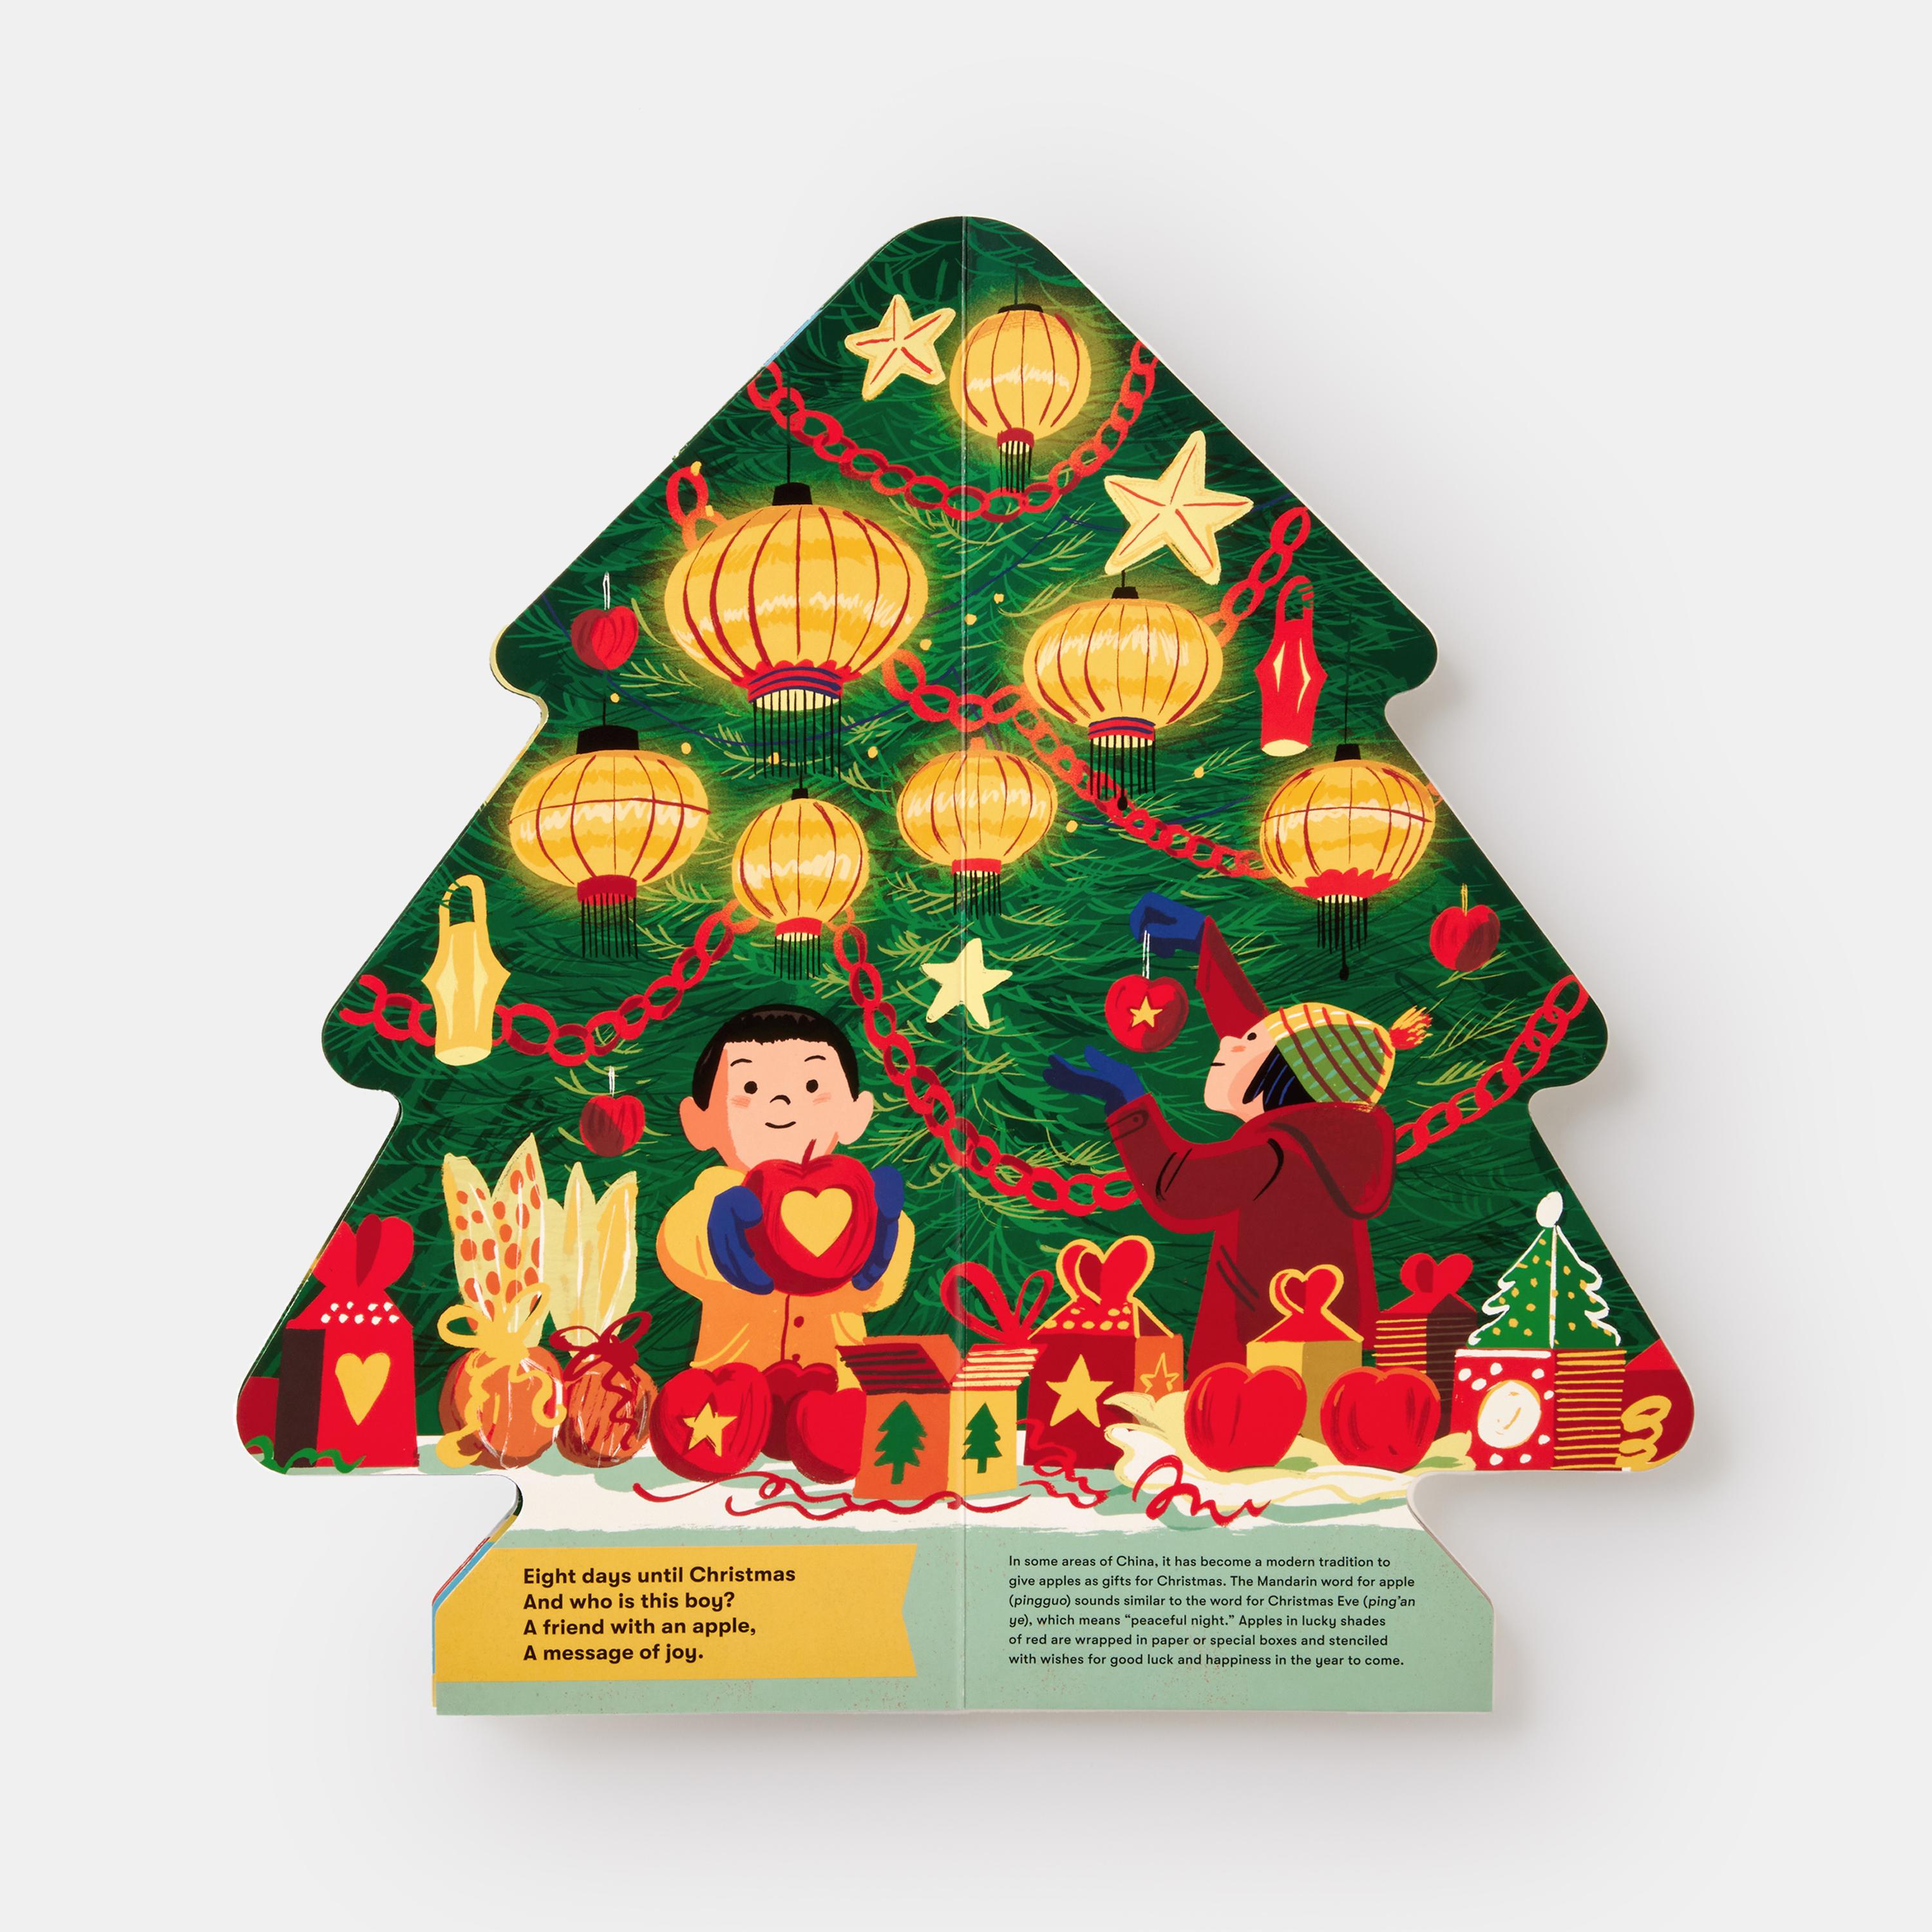 Célébration mondiale de Noël, ce livre en carton unique en forme de carrousel peut être ouvert et replié pour créer un arbre de Noël indépendant grâce à sa fermeture magnétique intégrée. Un cadeau solide et magnifique qui présente des œuvres d'art